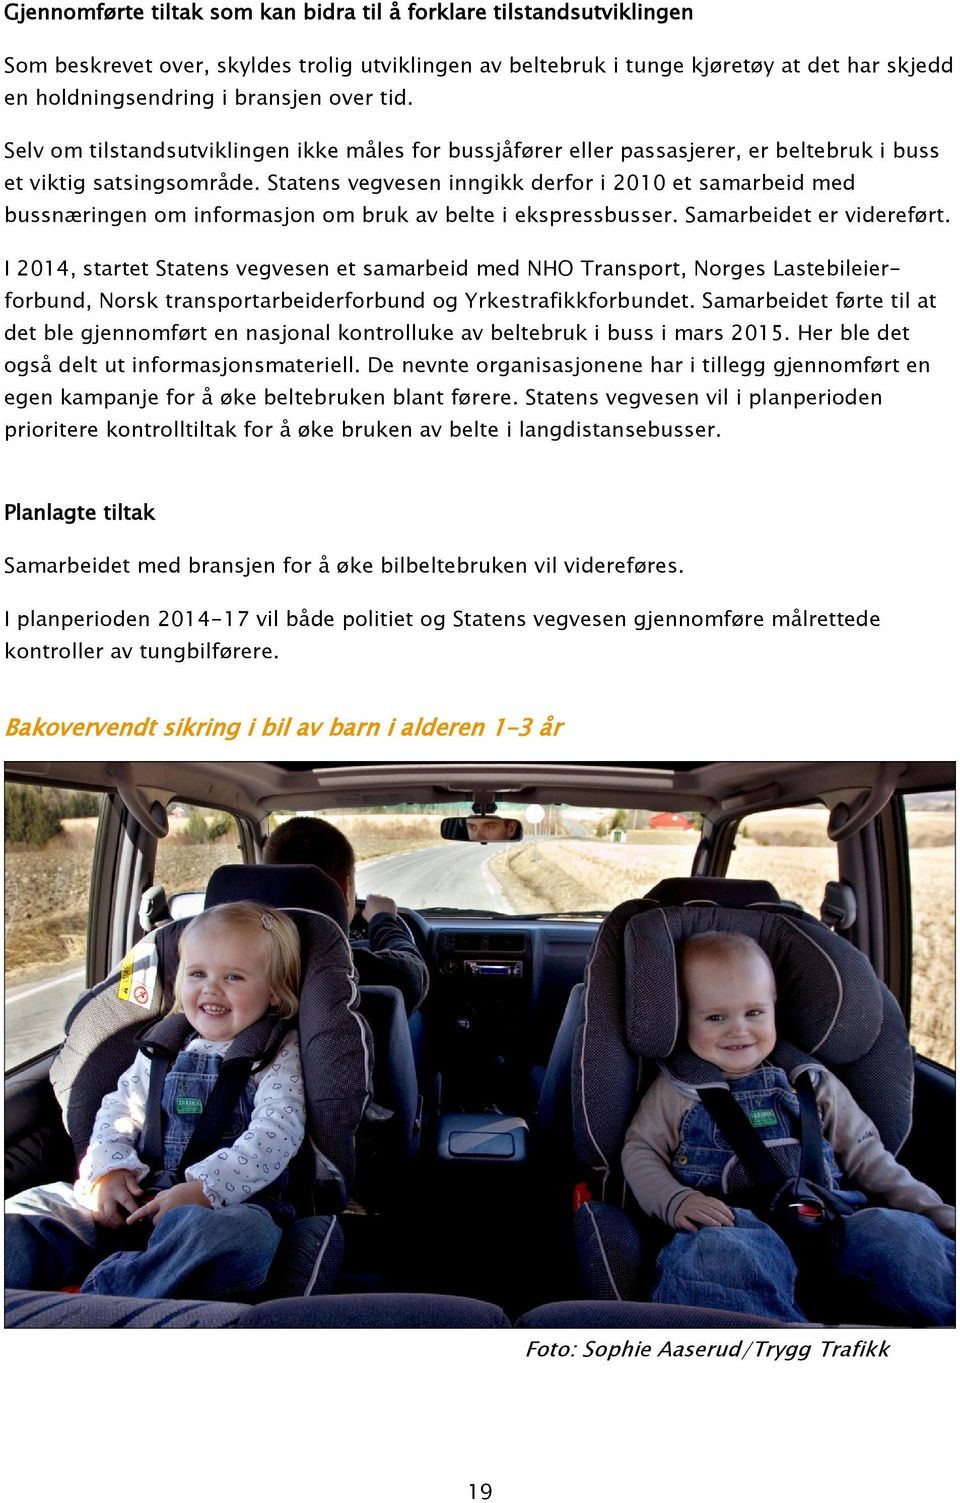 Statens vegvesen inngikk derfor i 2010 et samarbeid med bussnæringen om informasjon om bruk av belte i ekspressbusser. Samarbeidet er videreført.